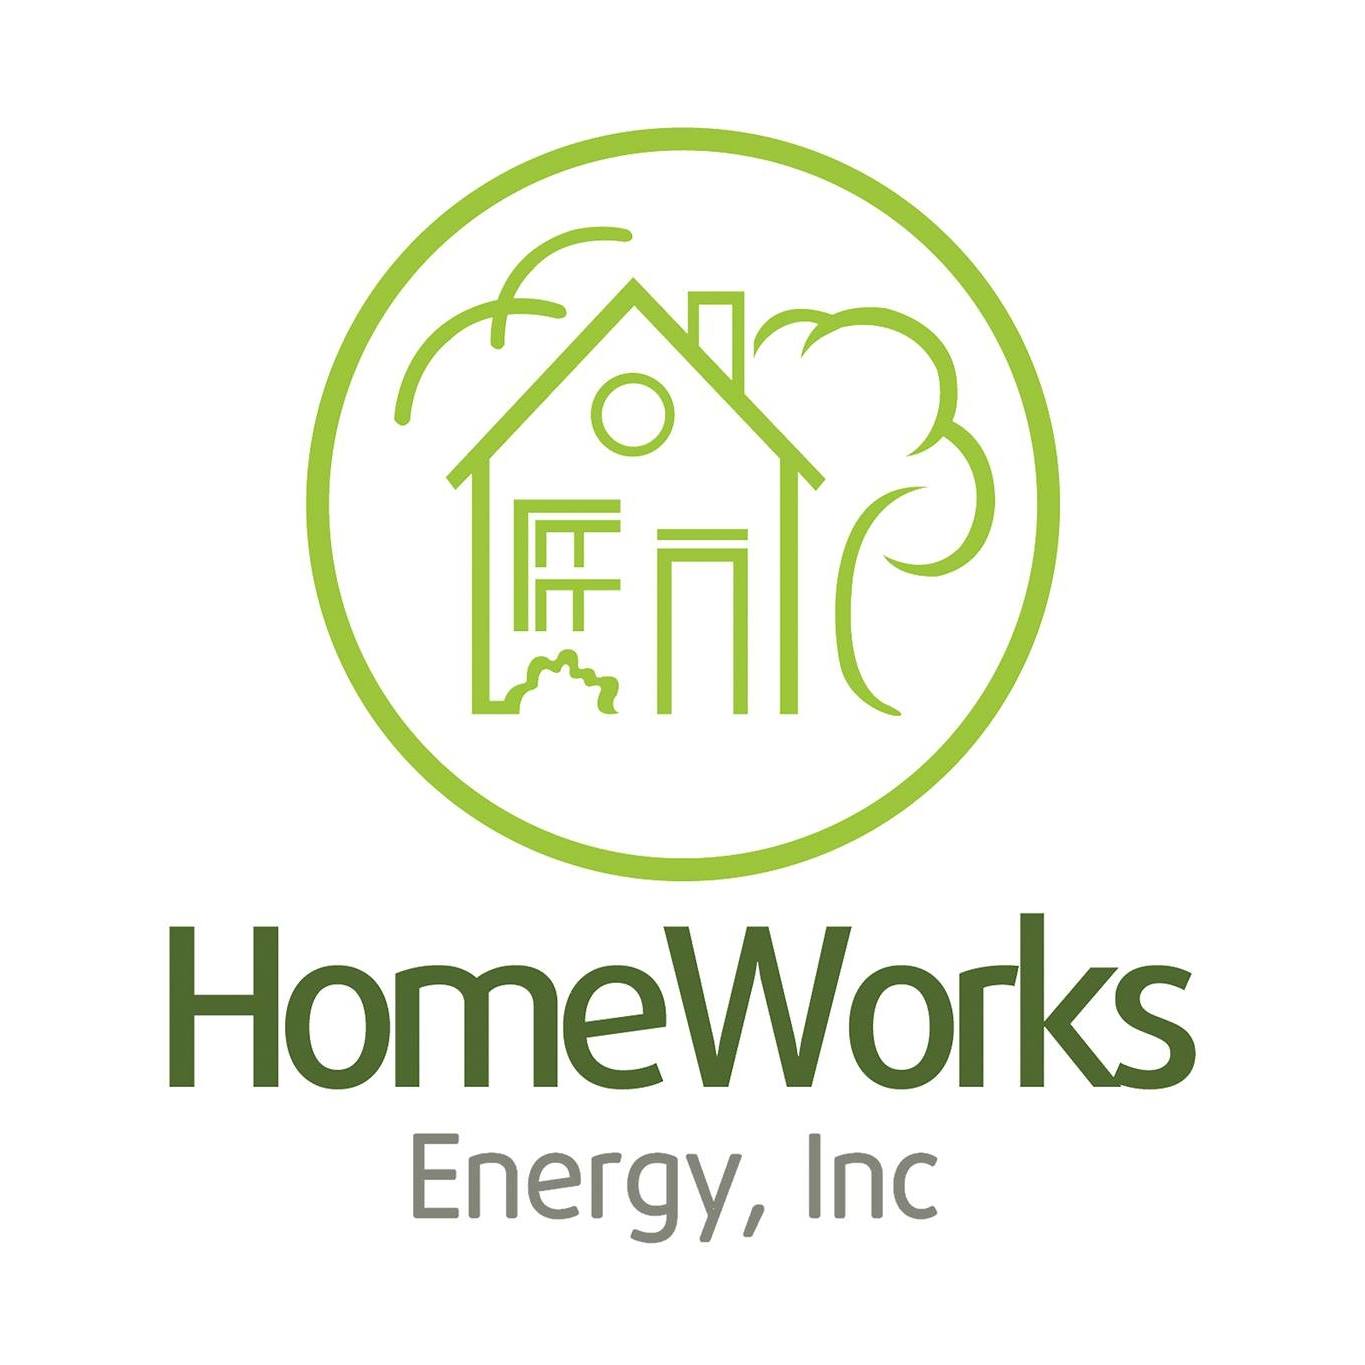 homeworks energy reddit